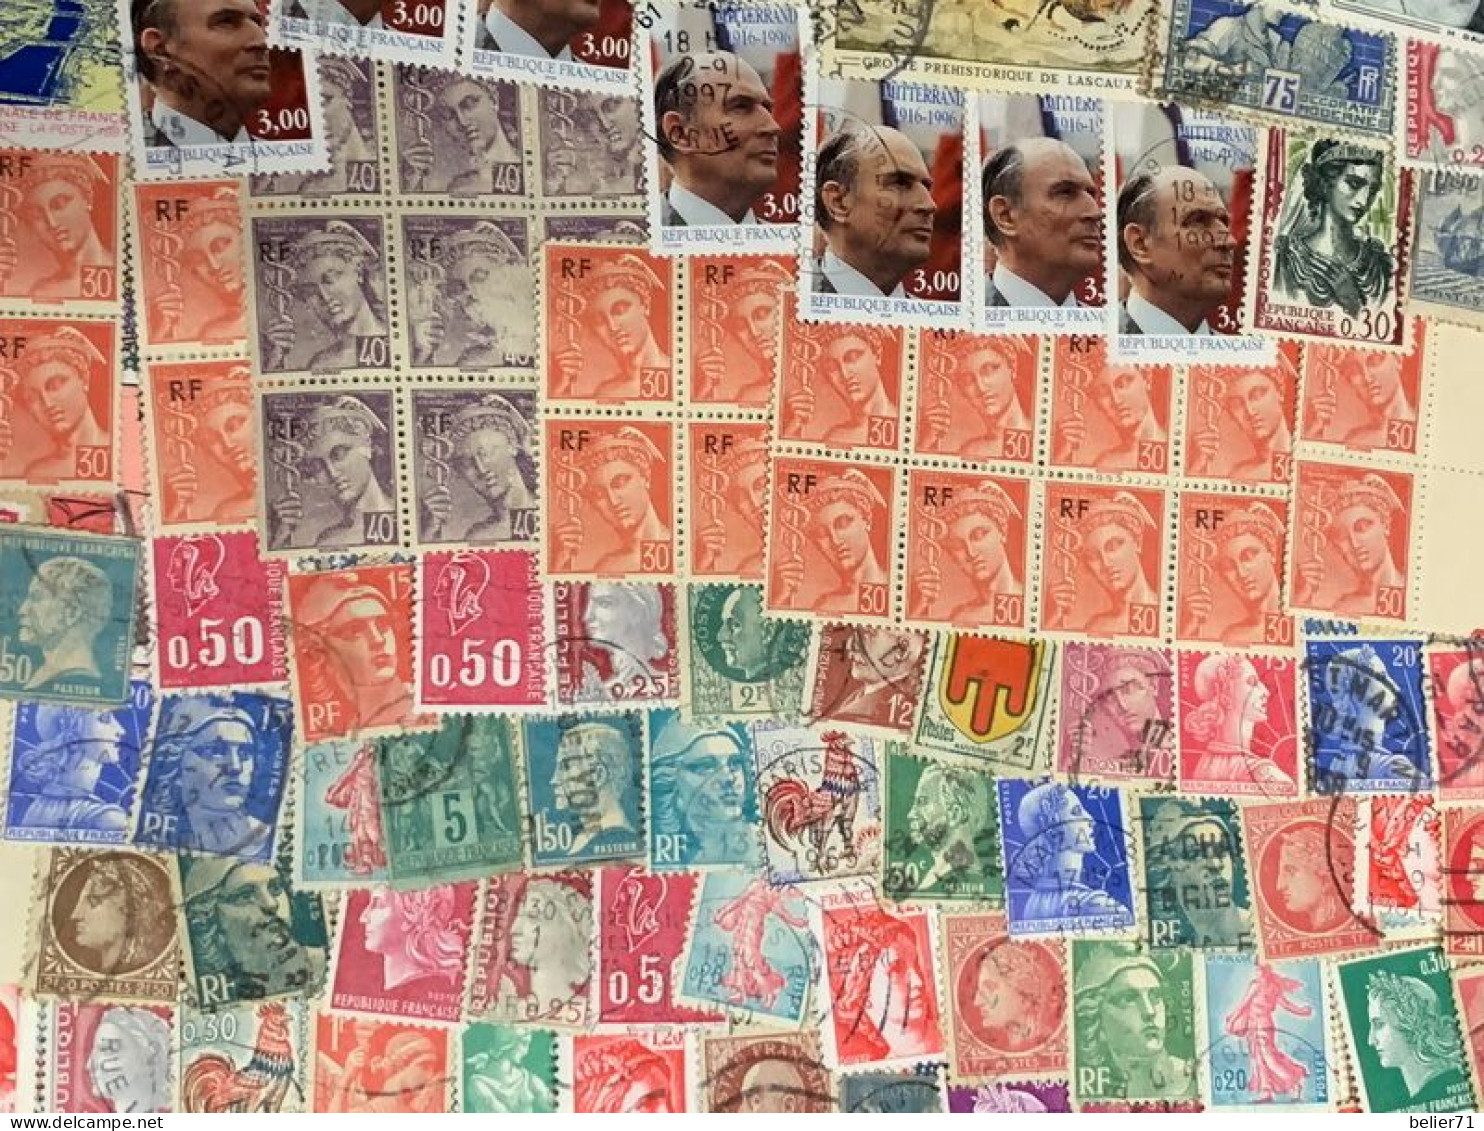 Vrac de timbres de France, toutes périodes, touts états aucun tri particulier fait